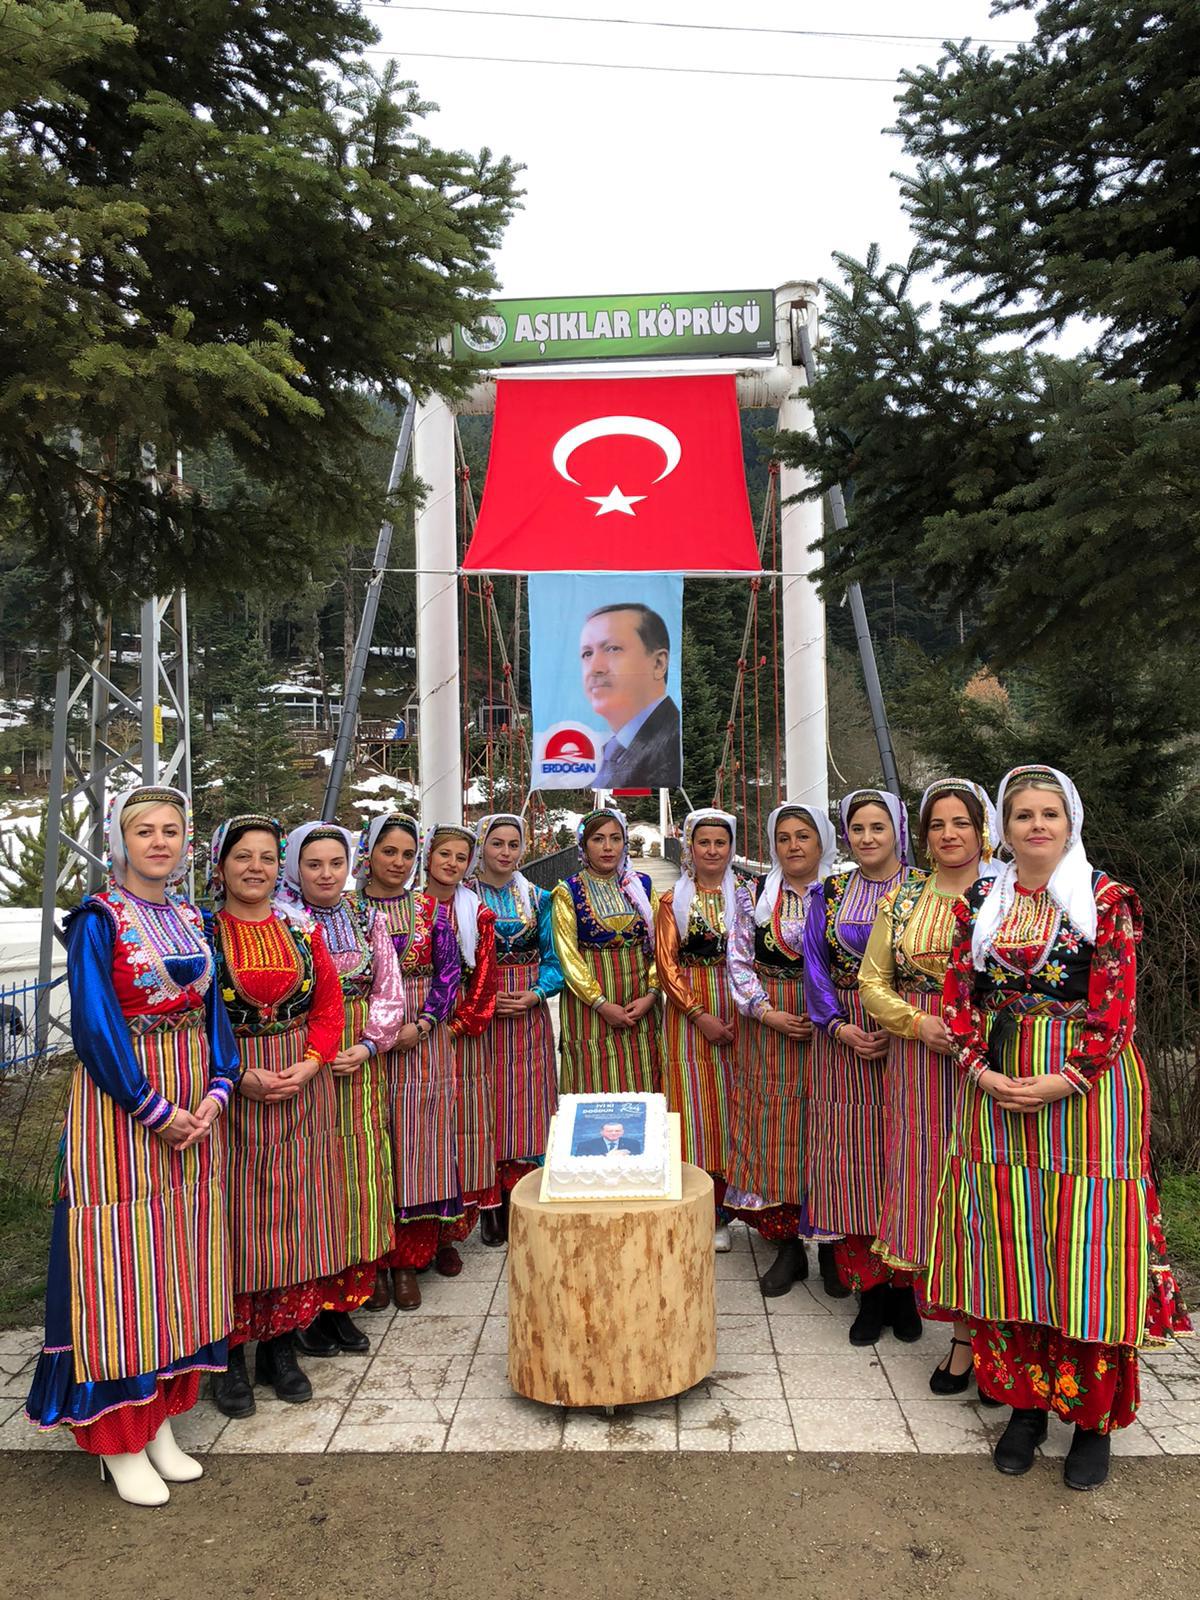 Yöresel kıyafetli kadınlar Cumhurbaşkanı Erdoğan’ın doğum gününü kutladı